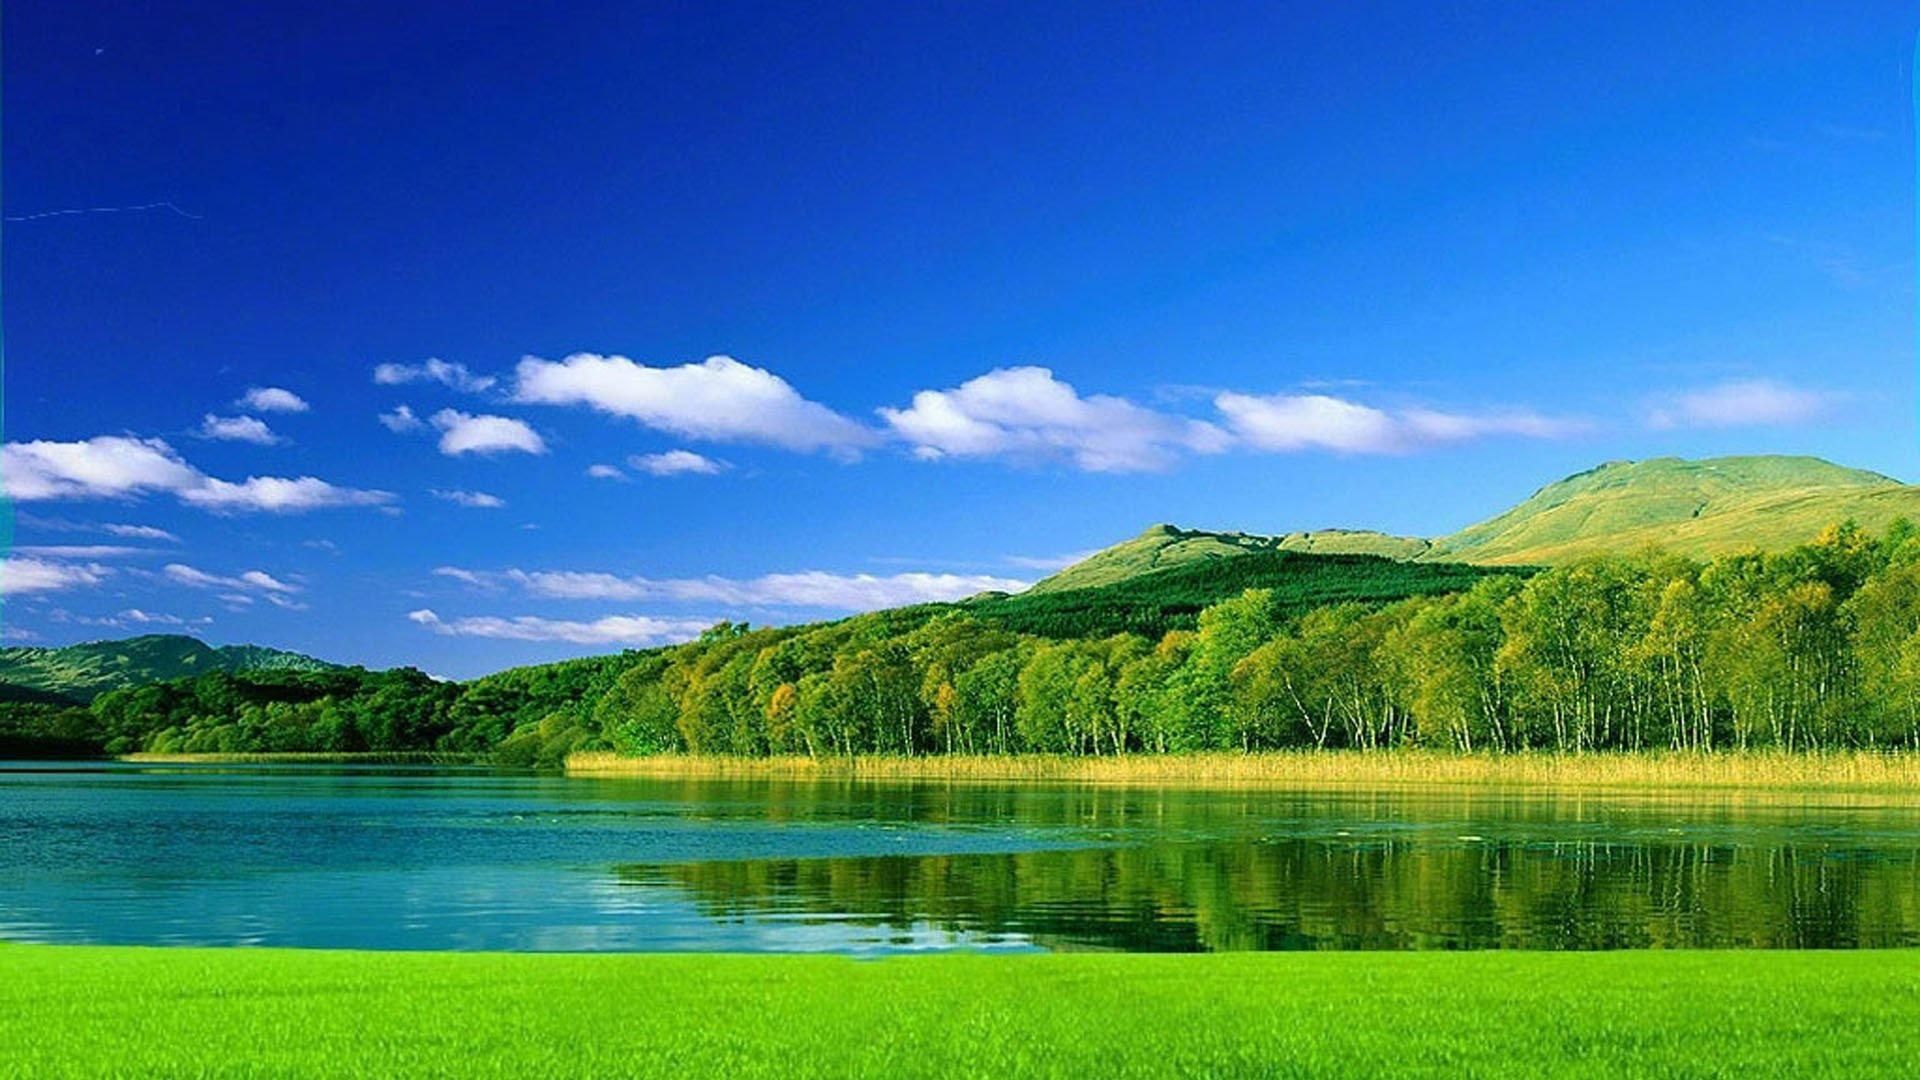 蓝天白云下的青山绿水优美风光高清桌面壁纸